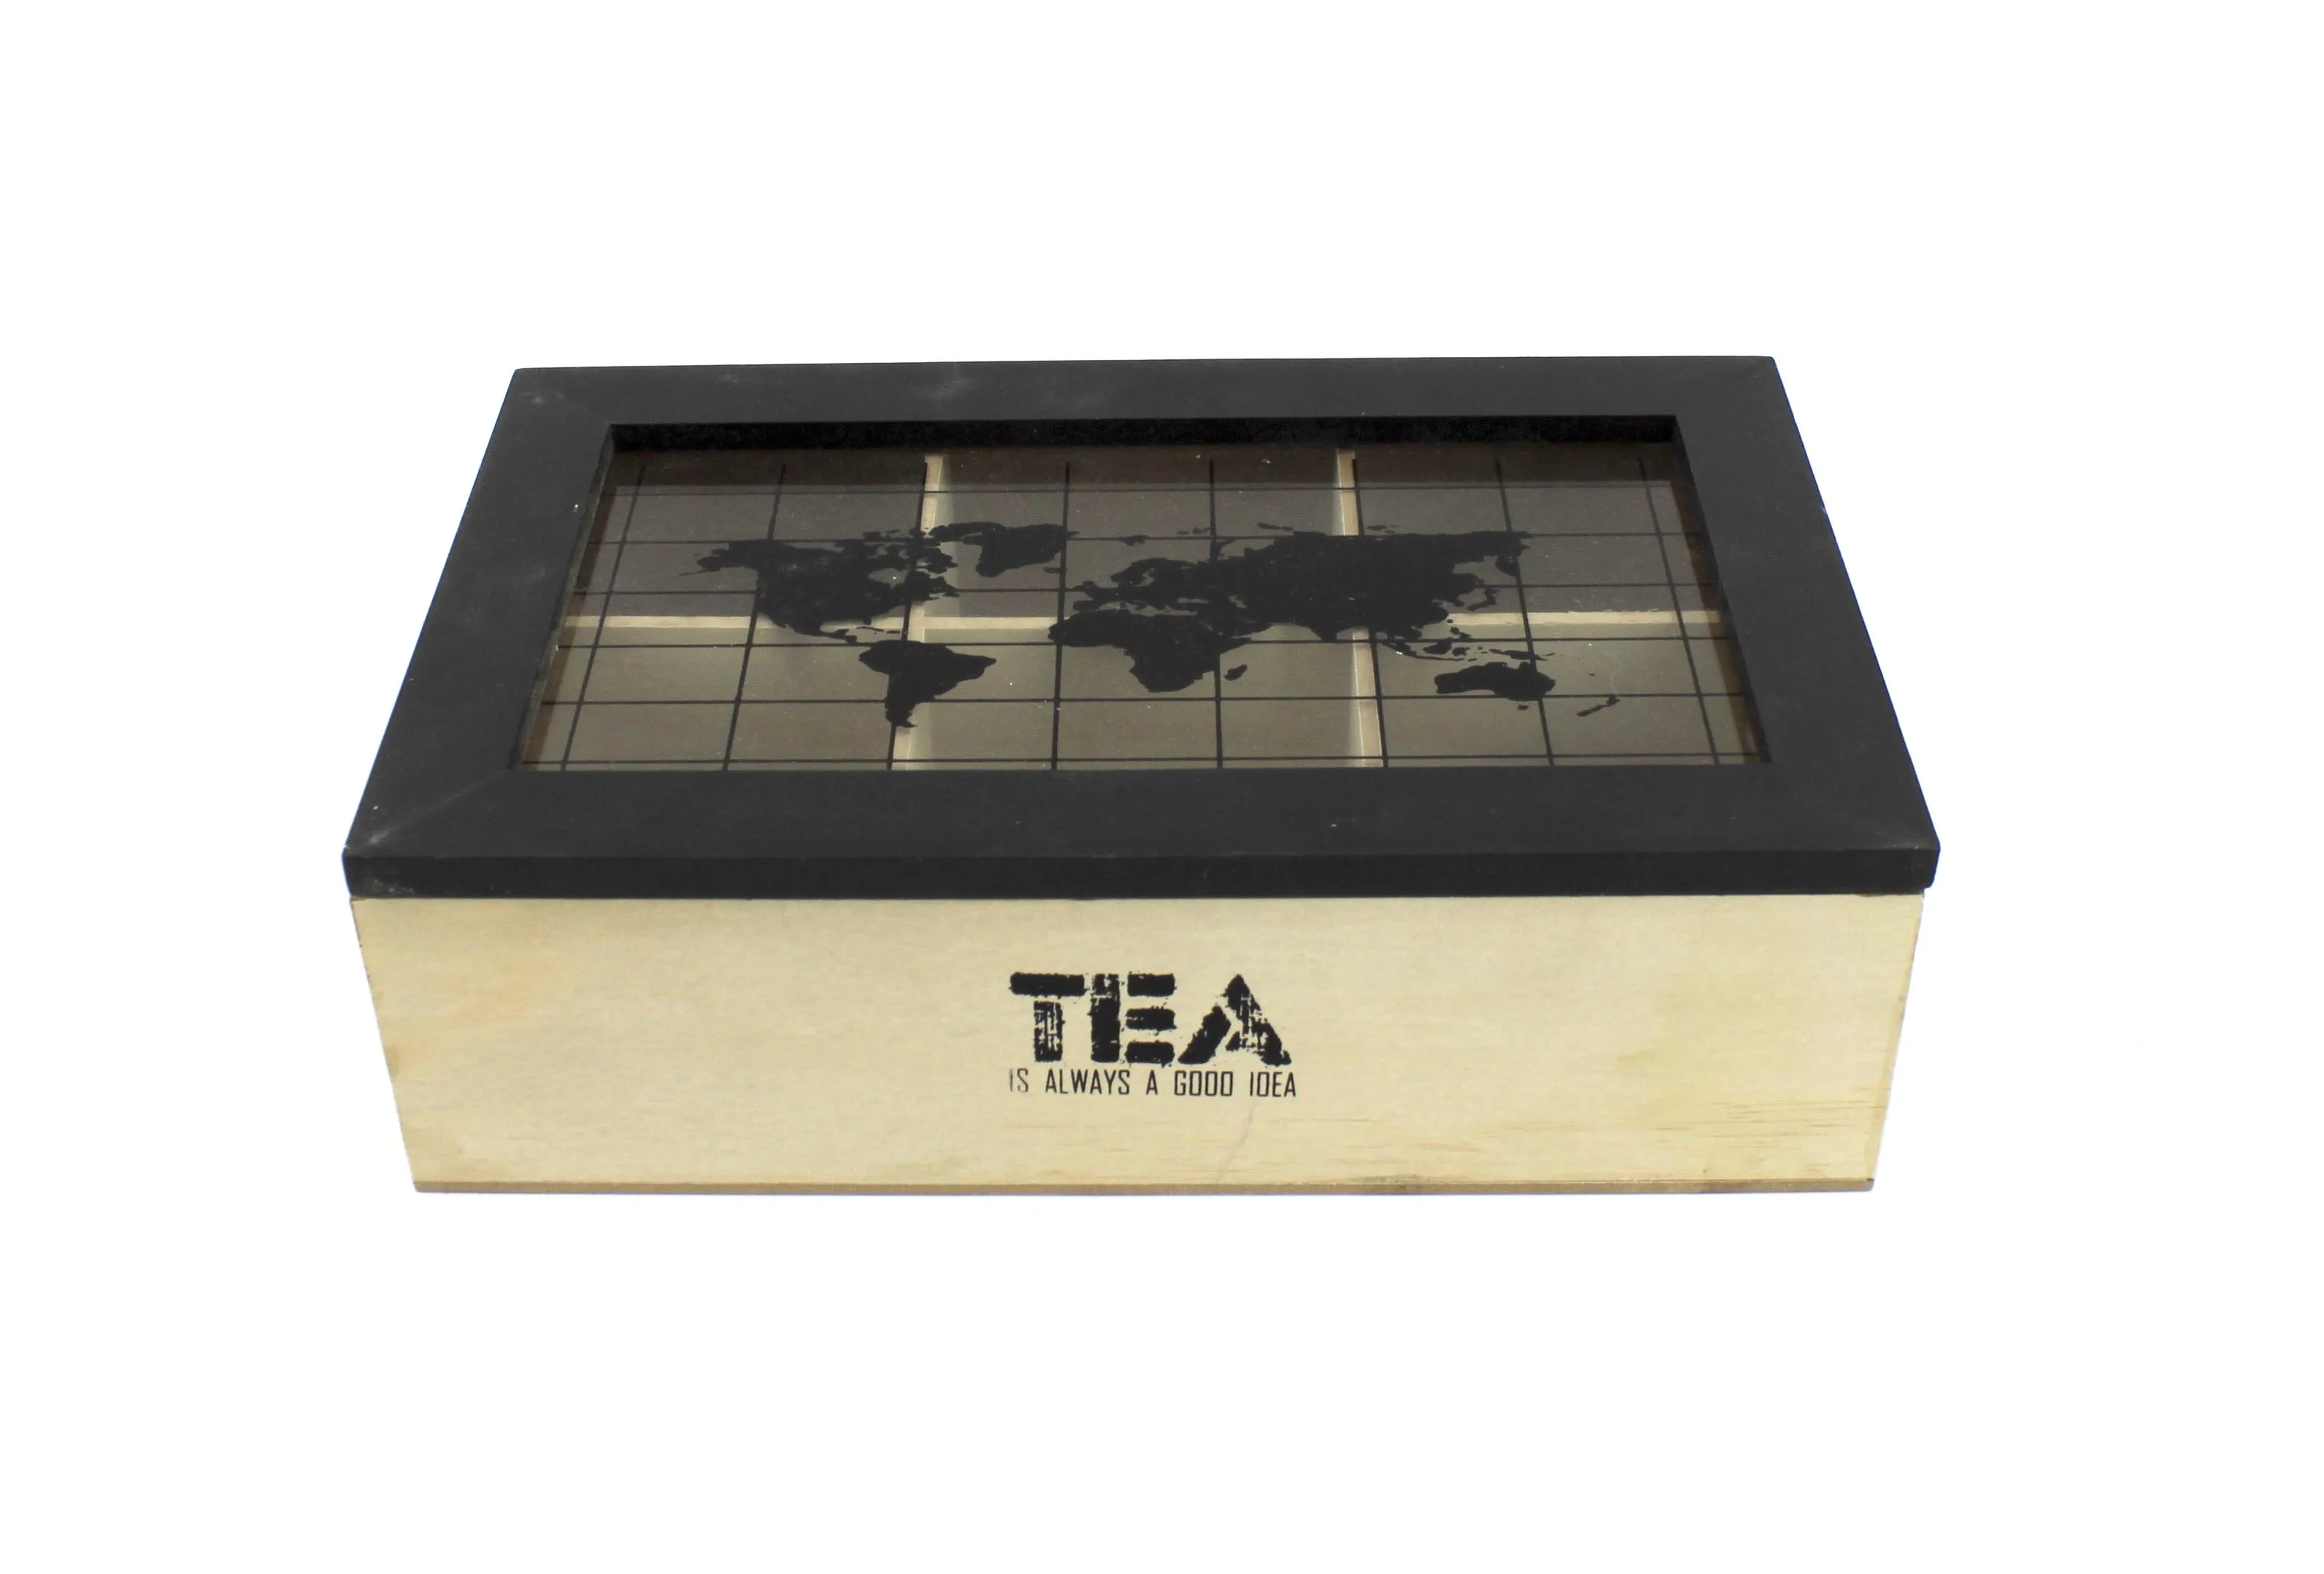 Лидер продаж 6 нагрудных отсеков органайзер для упаковки чайных пакетиков деревянная Подарочная чайная коробка с